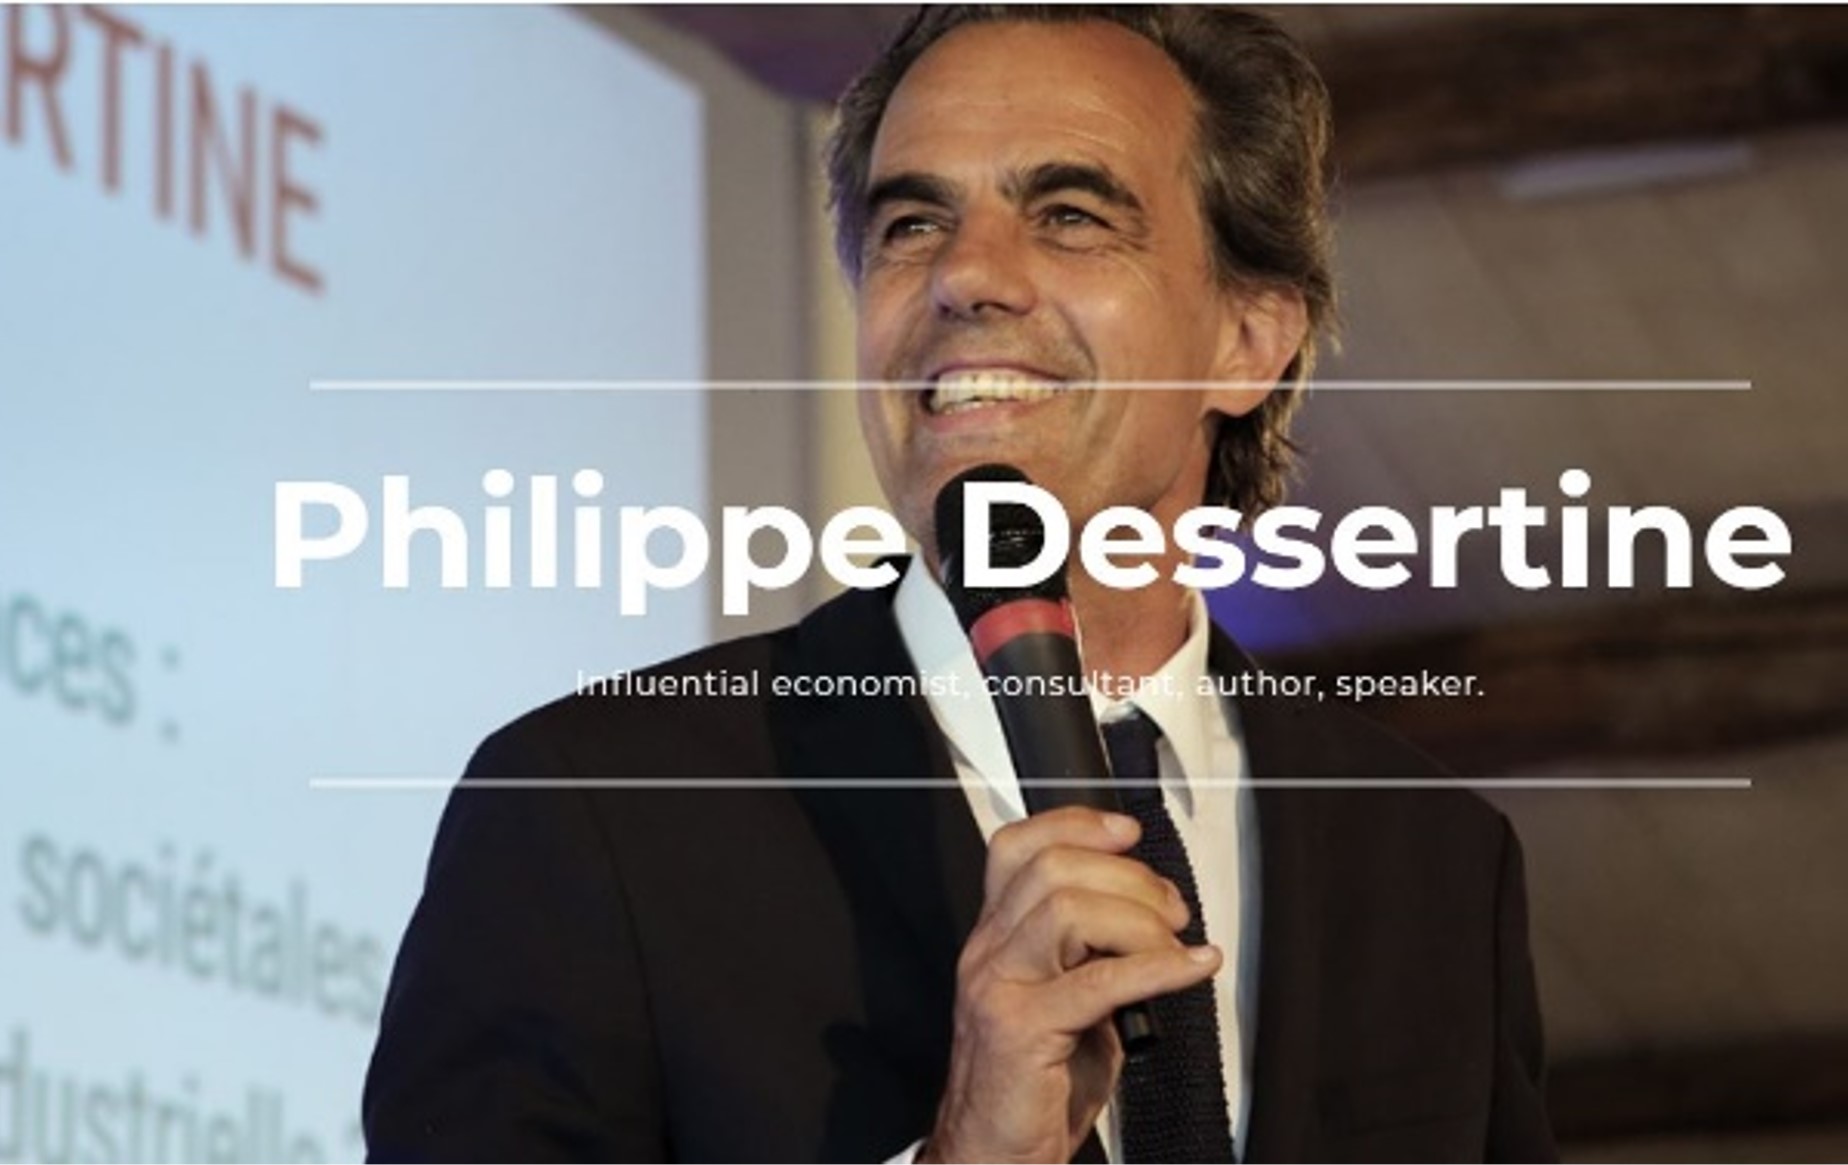 Philippe Dessertine Conference...